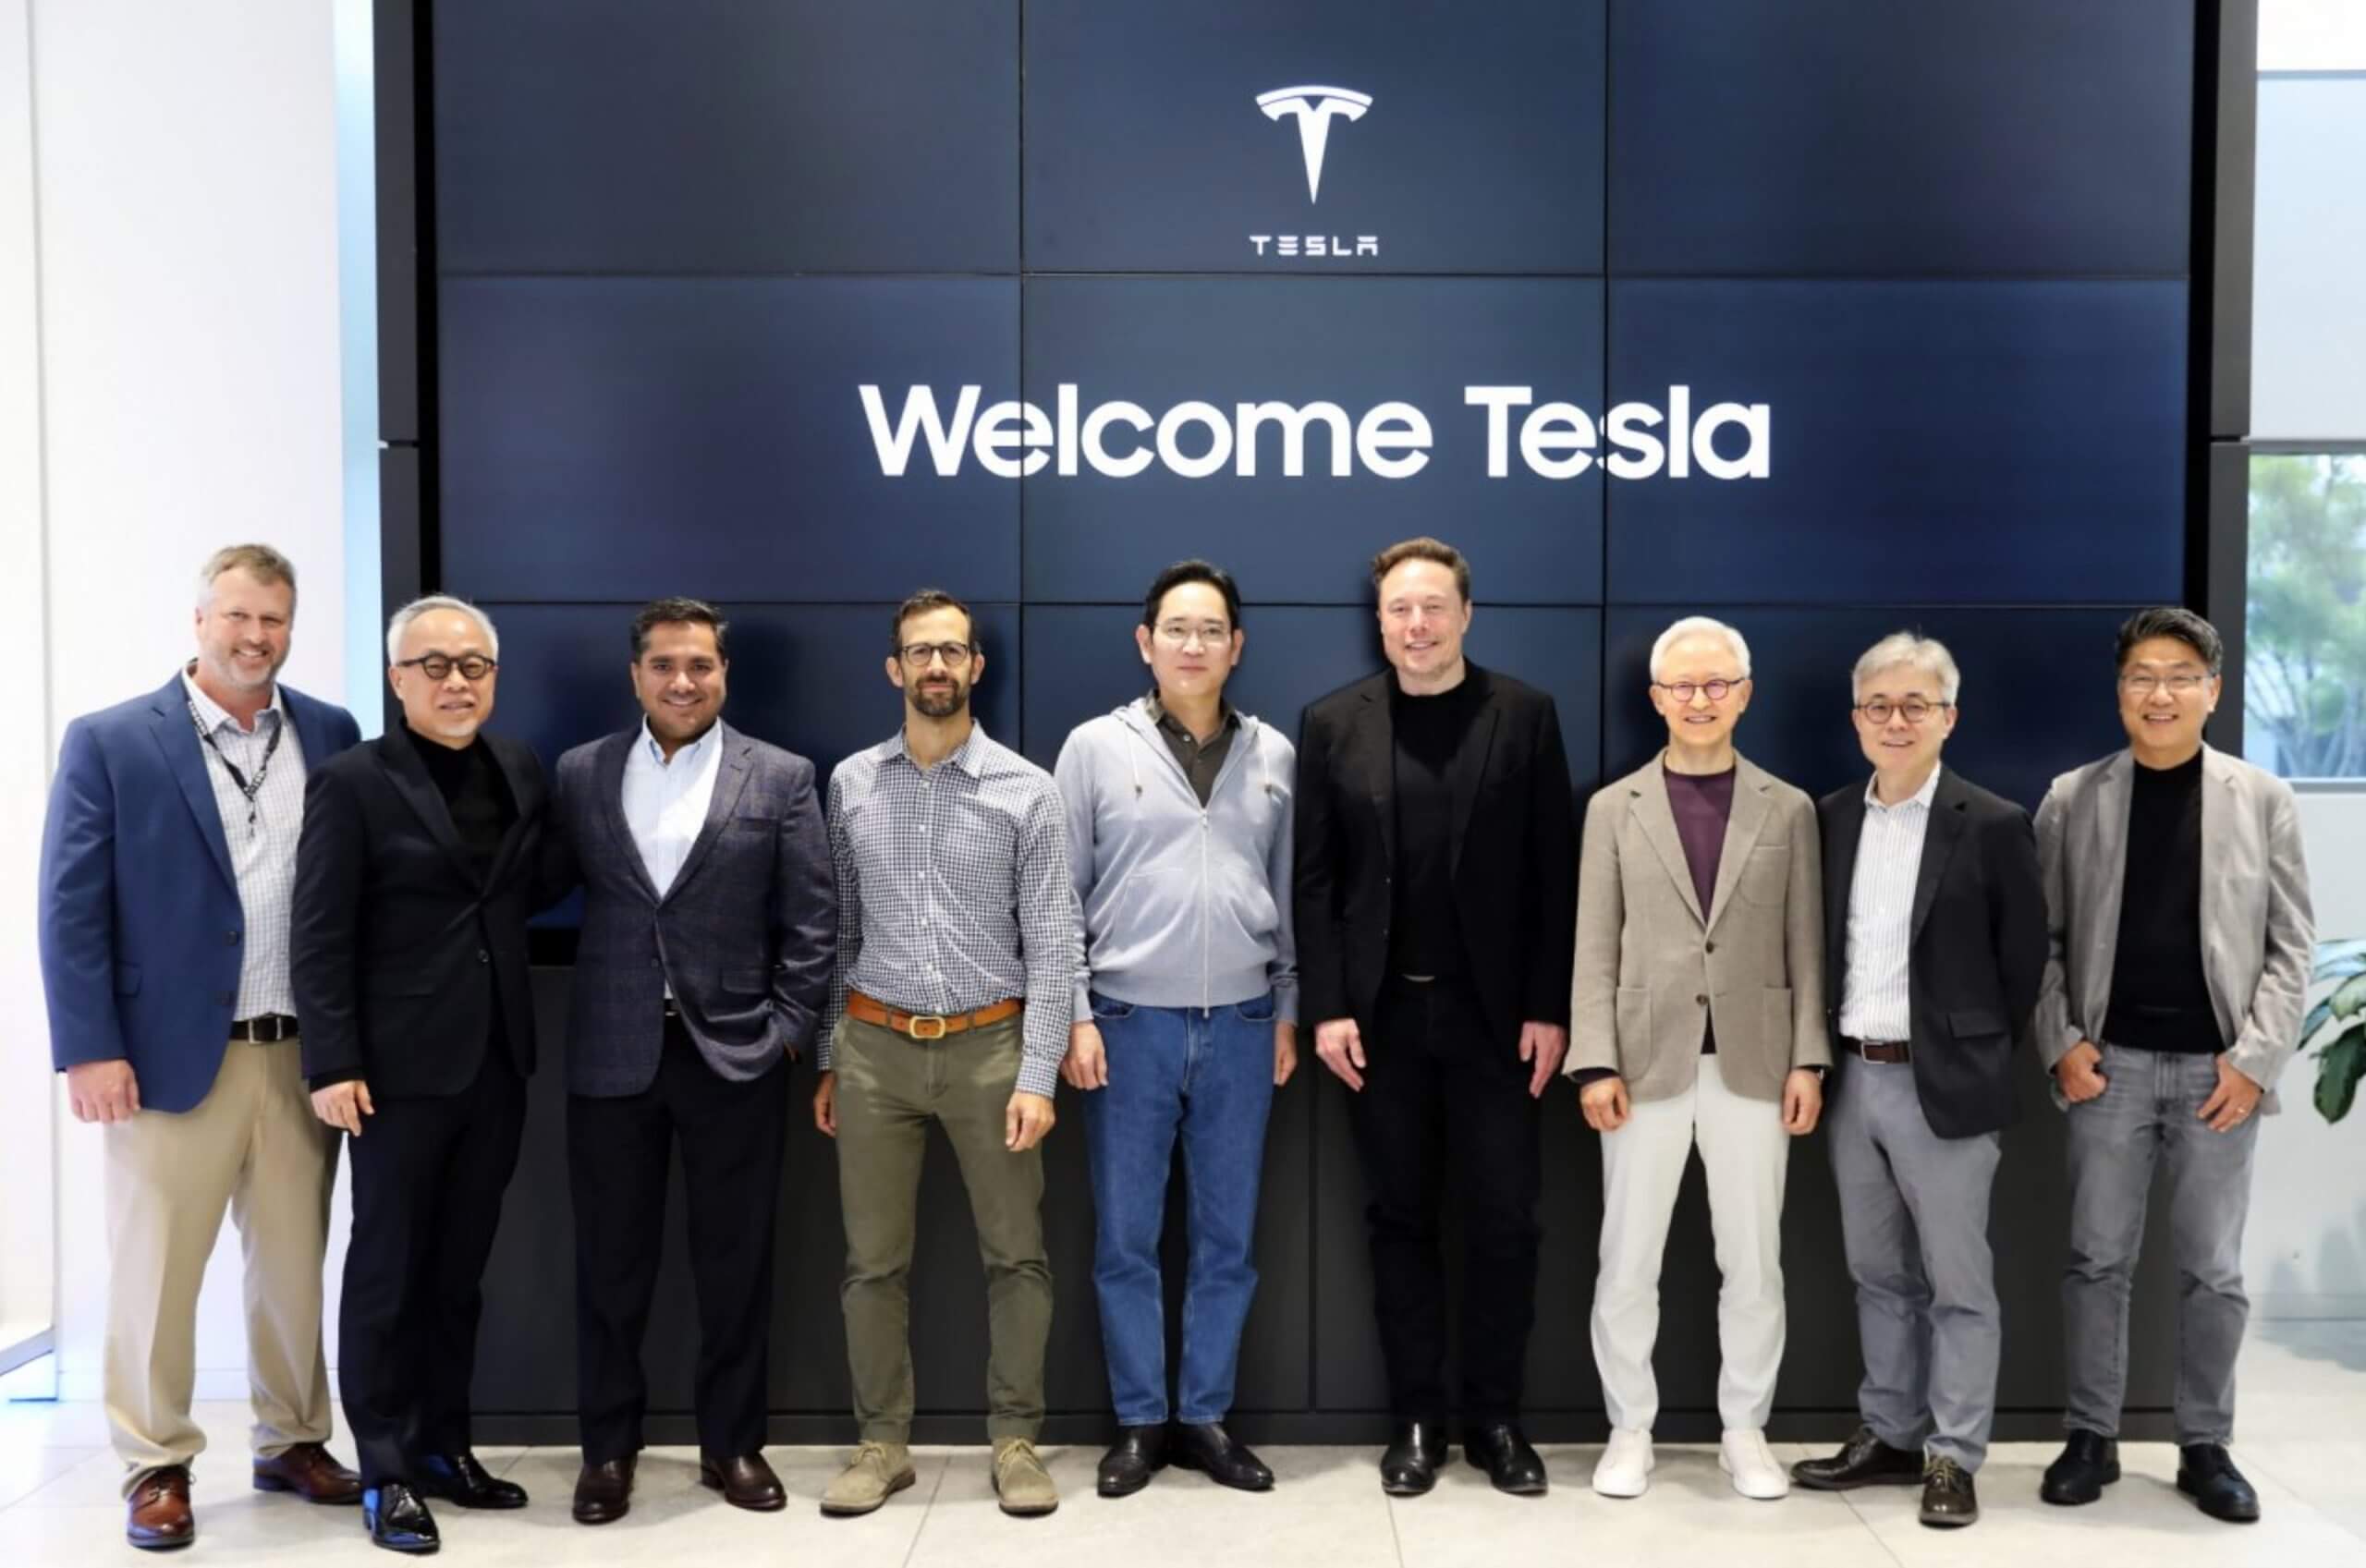 يلتقي مدراء تنفيذيون في شركة Tesla و Samsung Electronics لمناقشة التعاون المحتمل